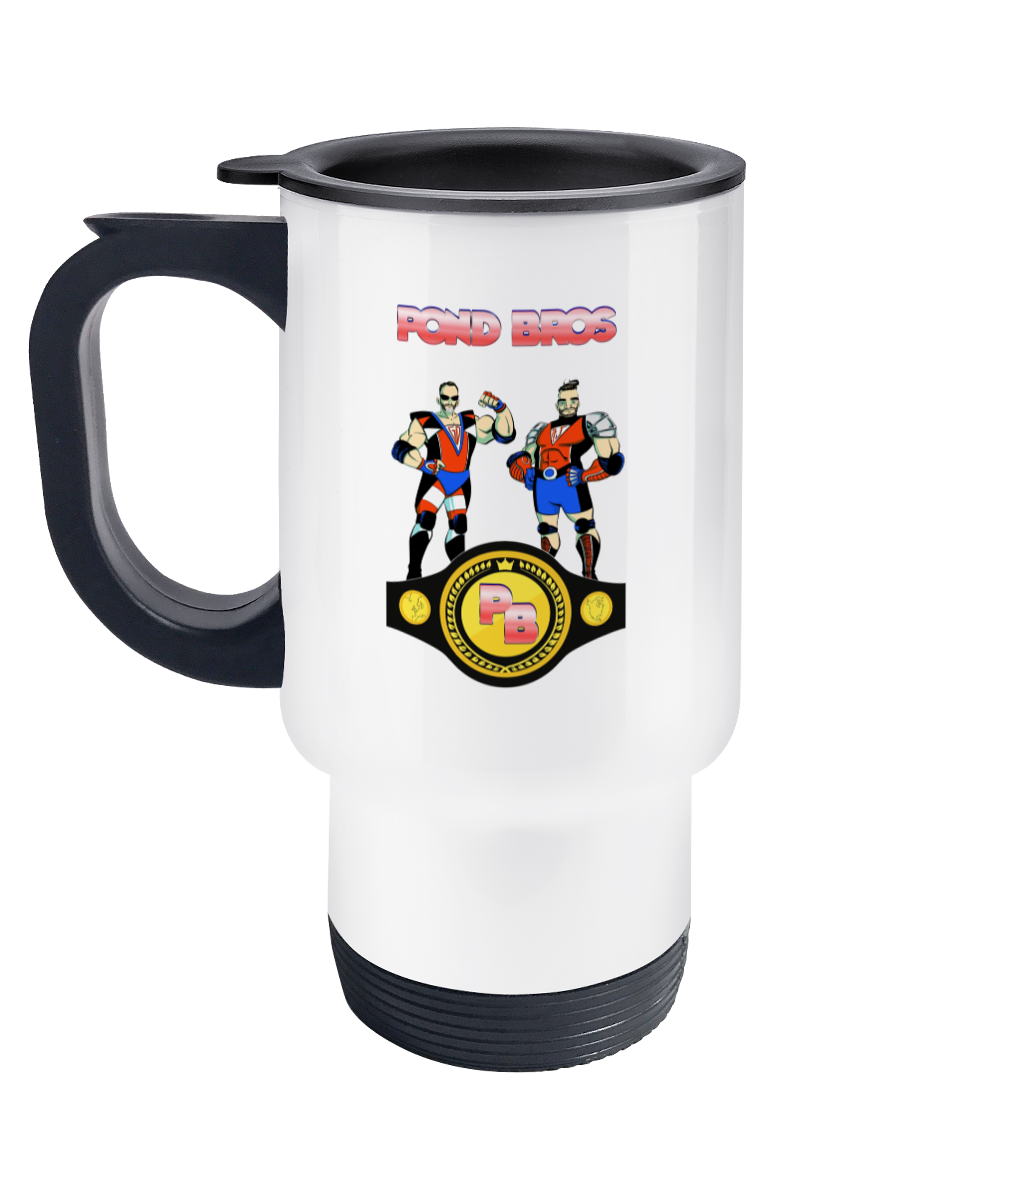 Pond Bros Promo Travel Mug